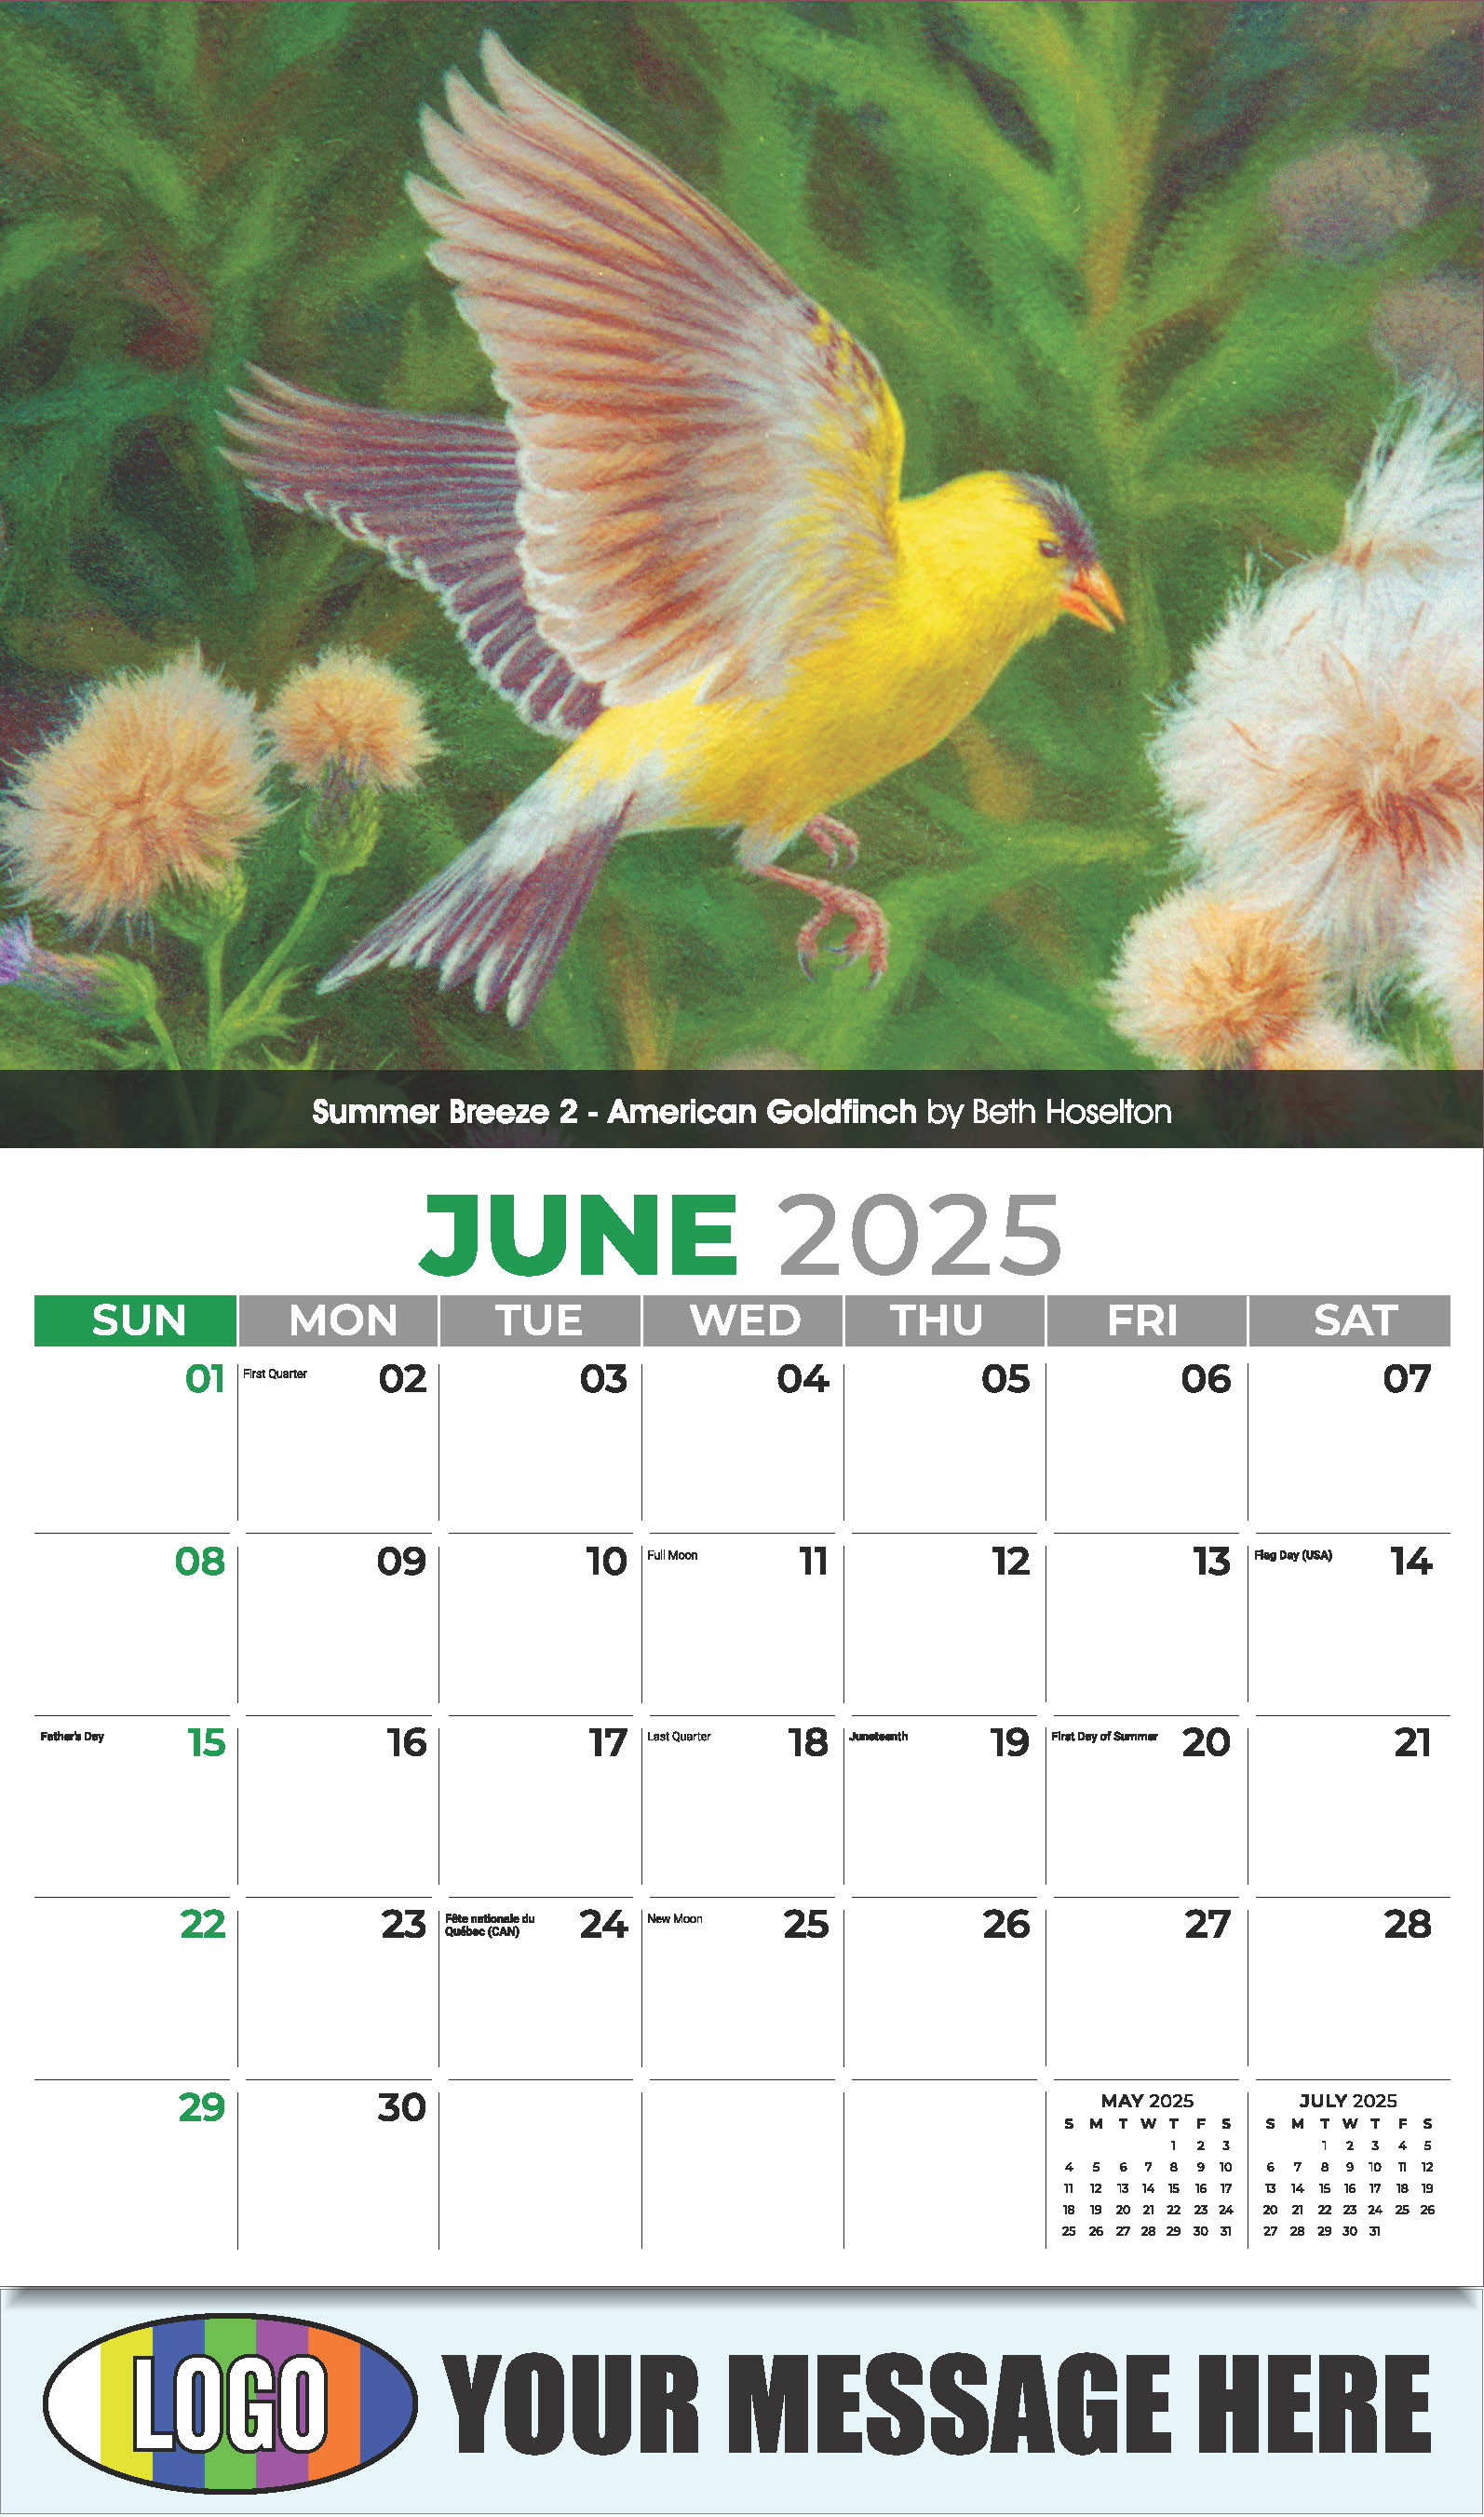 Garden Birds 2025 Business Promotional Calendar - June